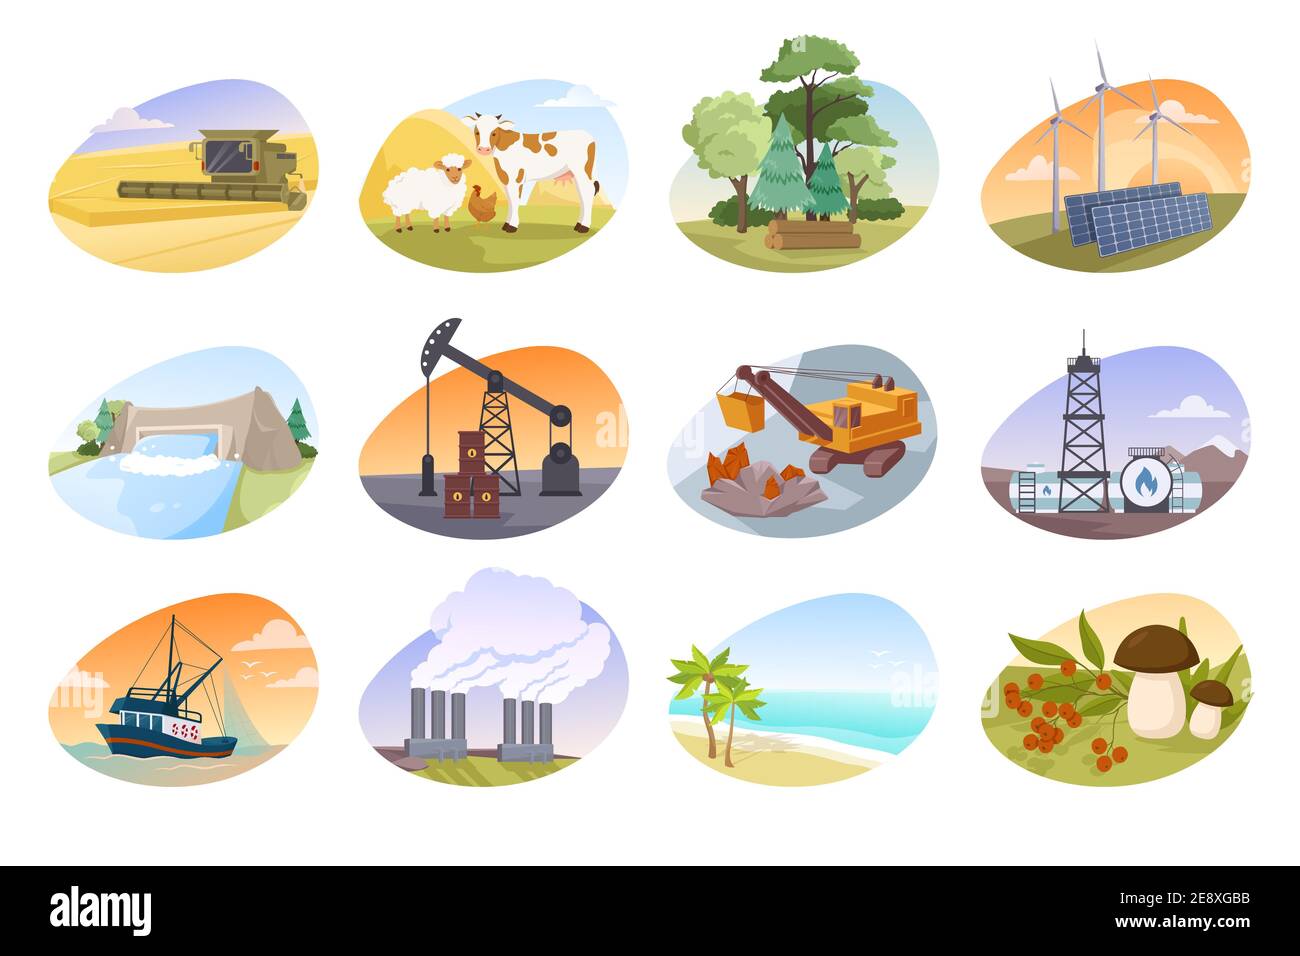 Illustrationen, die Arten von natürlichen Ressourcen darstellen Stock Vektor